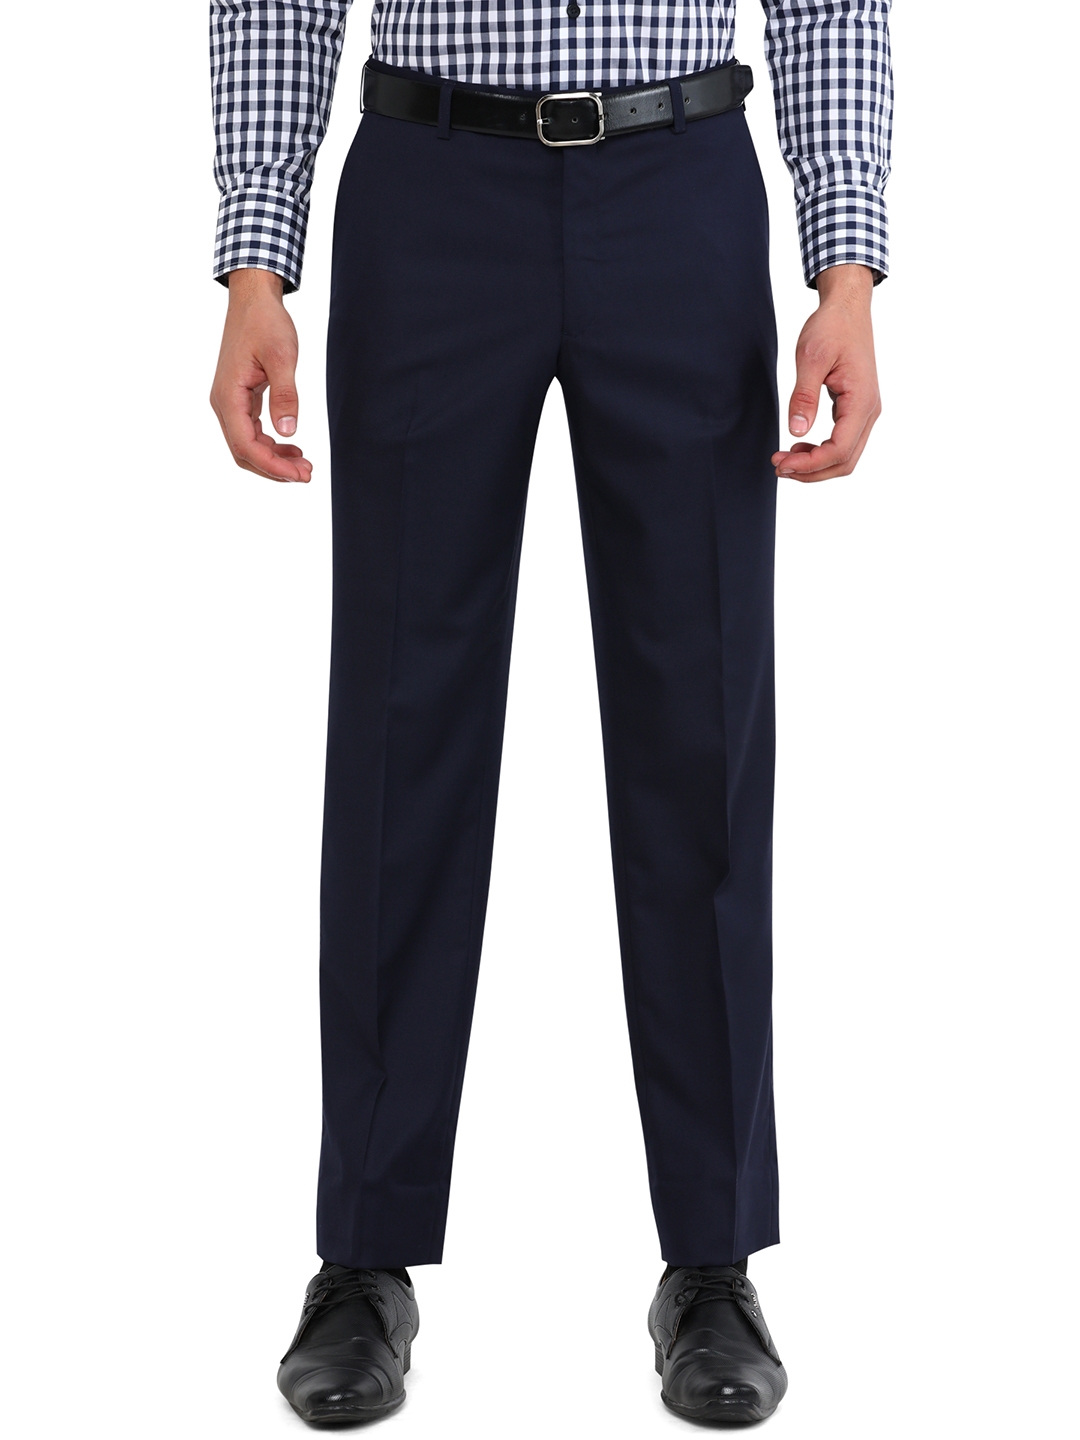 JadeBlue | Navy Blue Solid Classic Fit Formal Trouser | JadeBlue